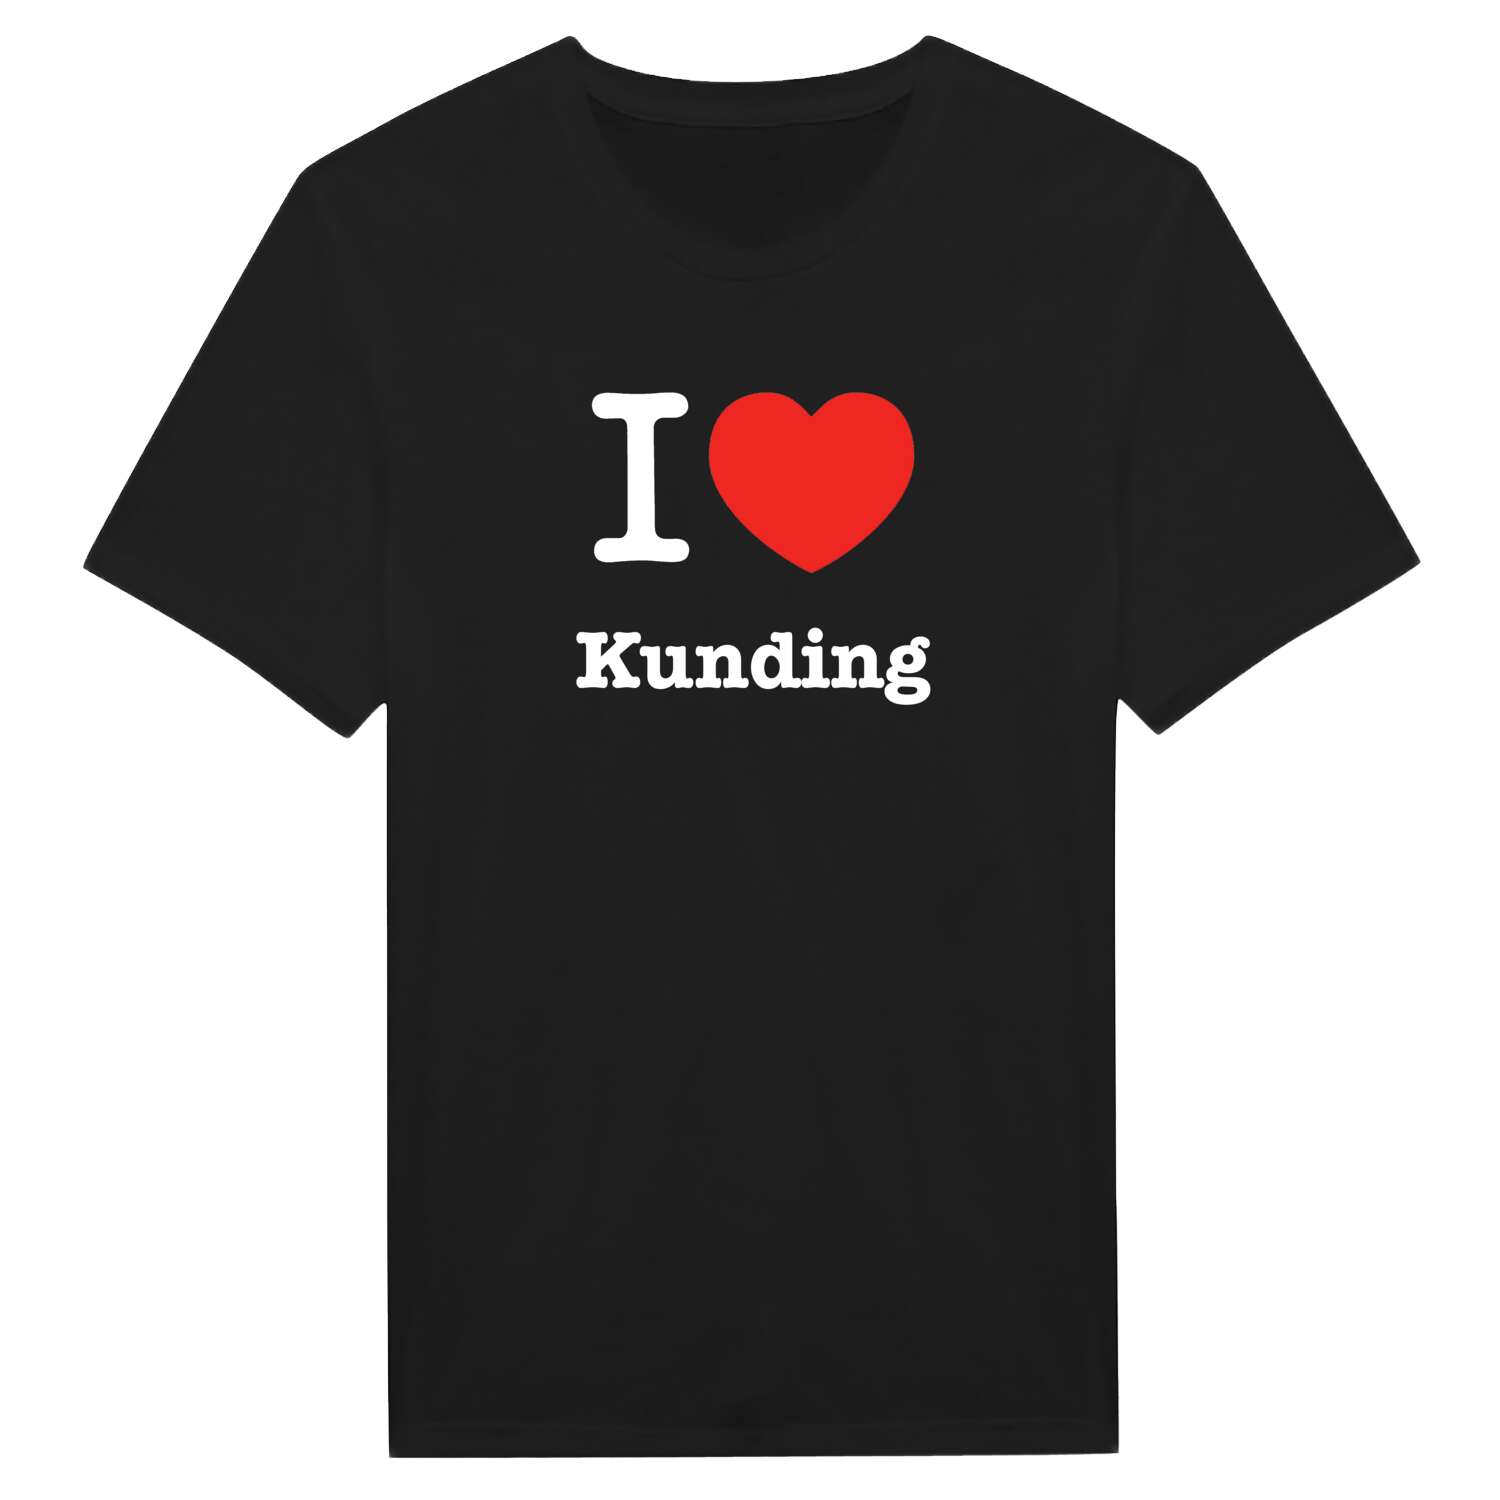 Kunding T-Shirt »I love«